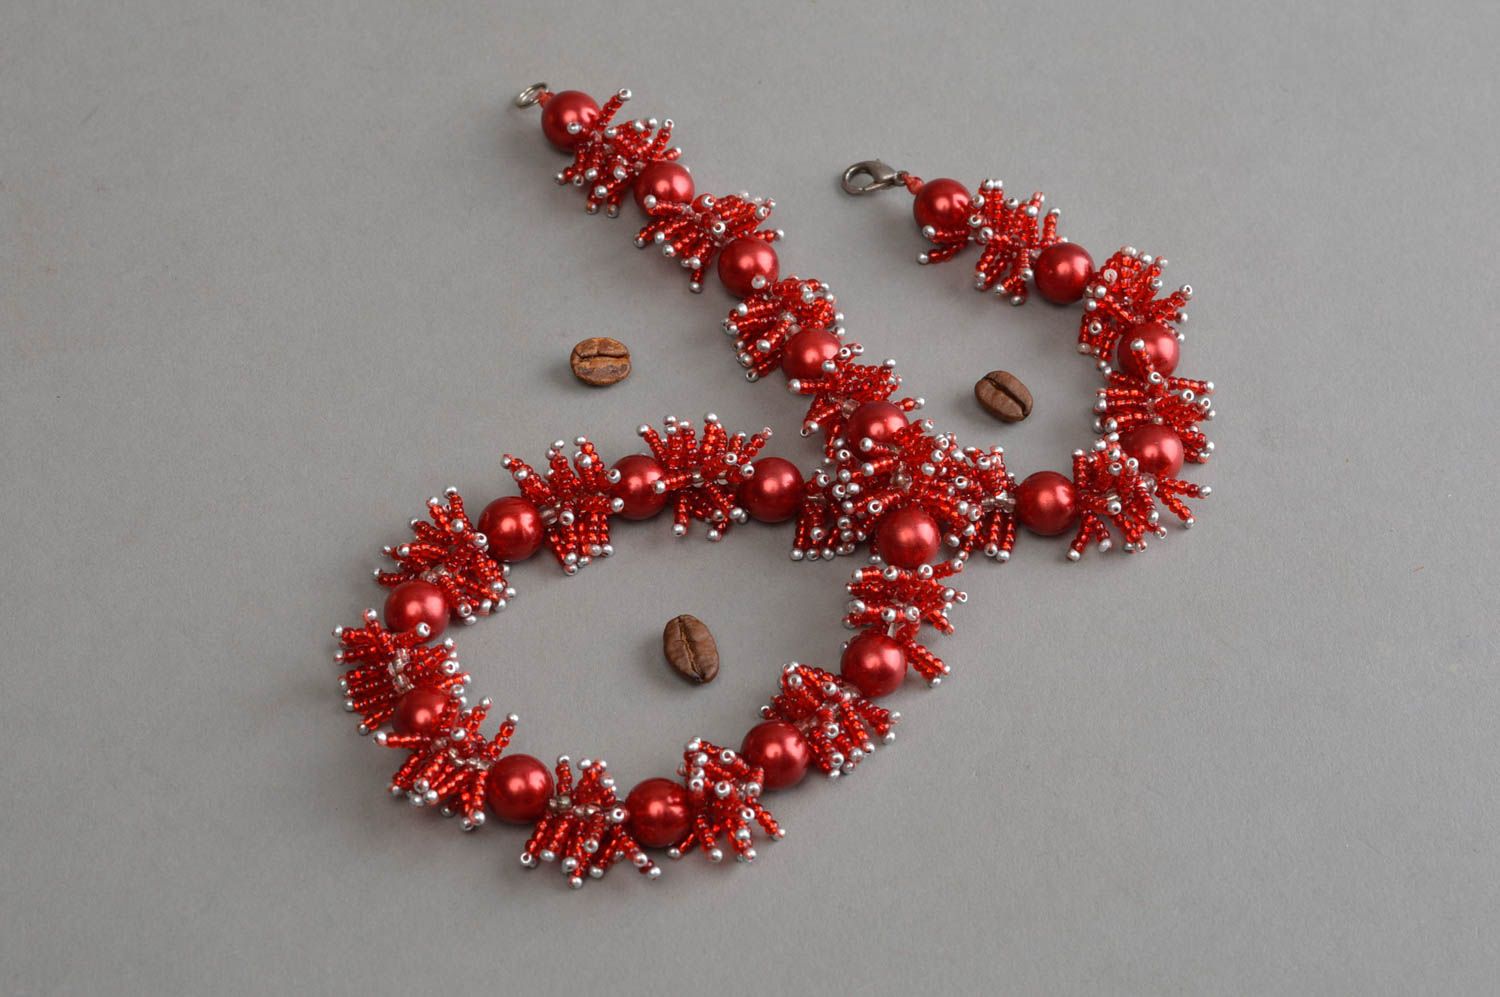 Ожерелье из бисера и бусин ручной работы бордовое красивое авторское стильное фото 1